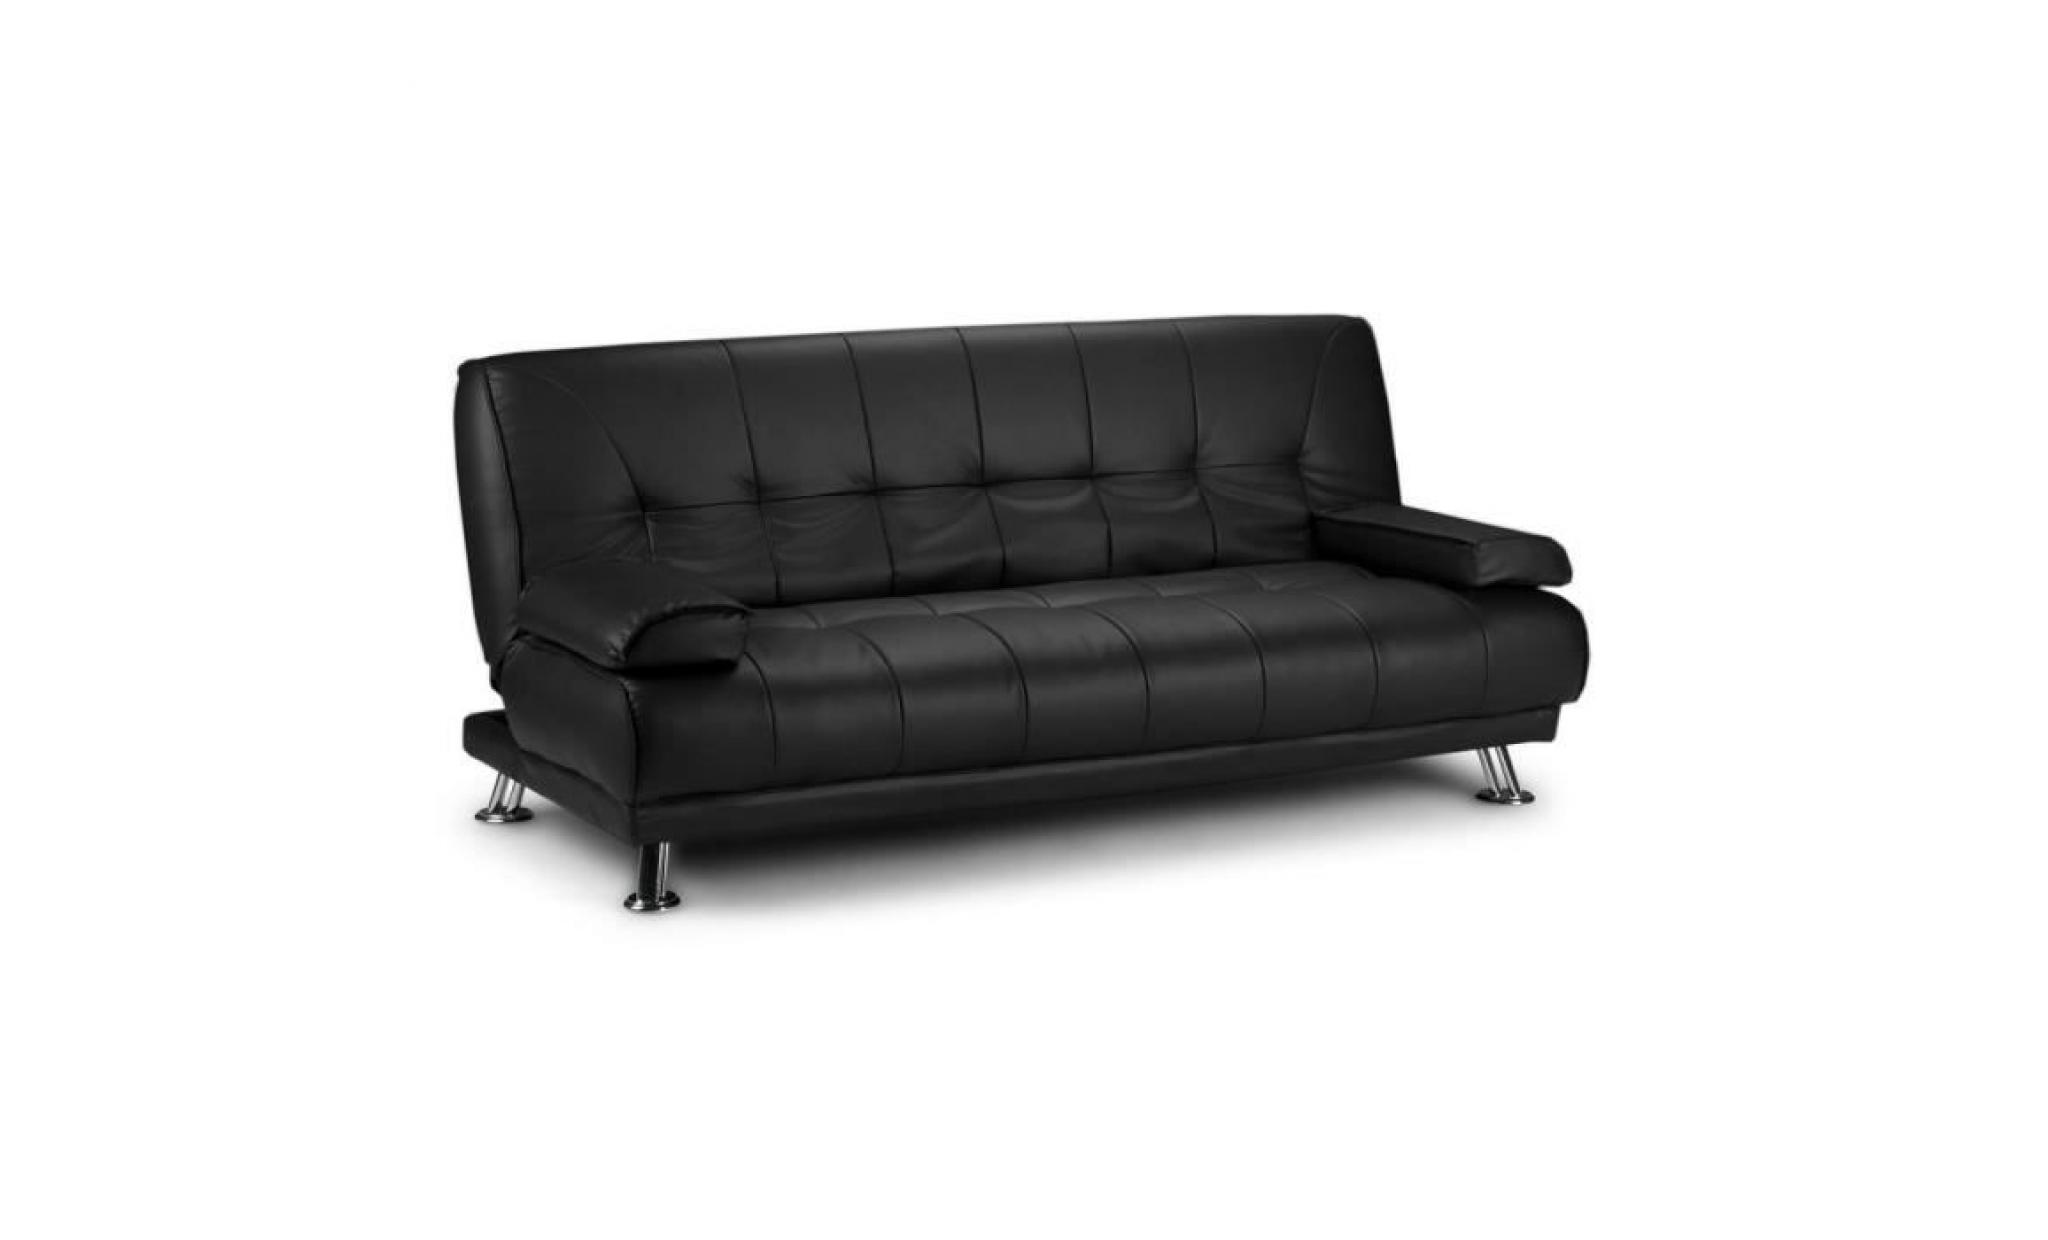 canapé lit ajustable clic clac en cuir artificiel pour intérieur maison avec 2 oreillers noir